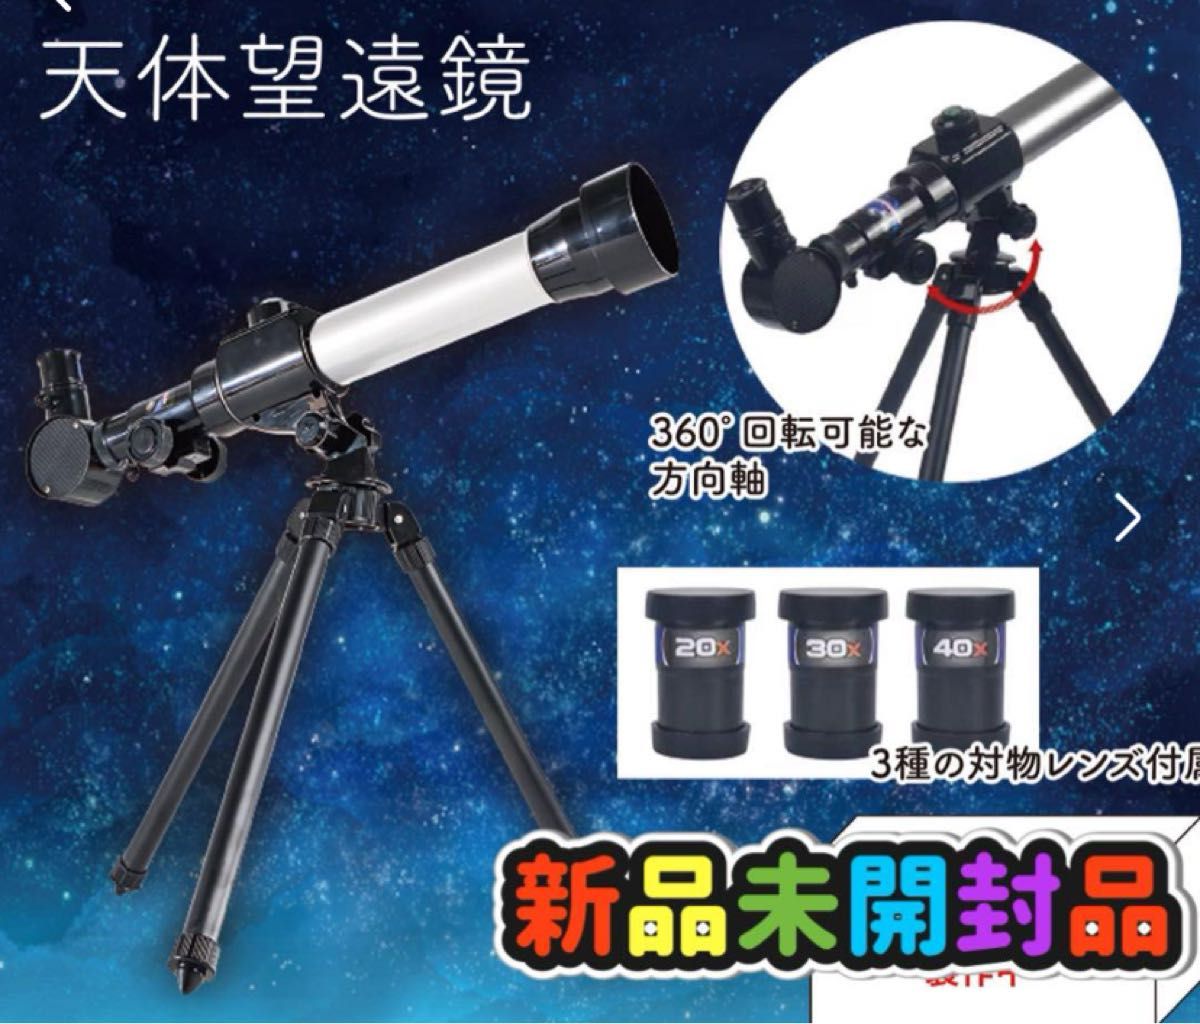 天体望遠鏡 折りたたみ収納可能 3種対物レンズ付き 軽量